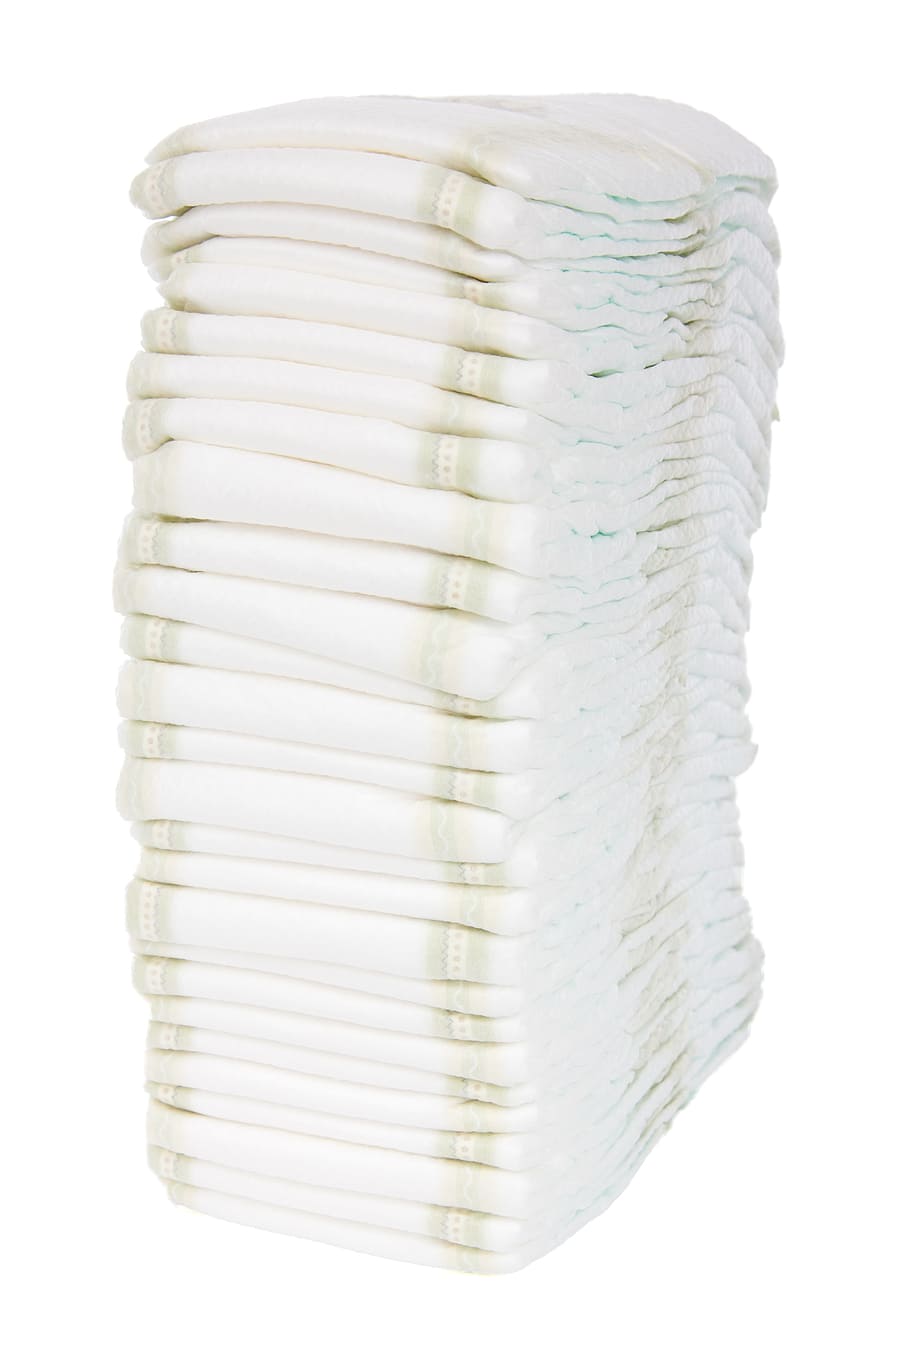 toallas blancas apiladas, Bebé, Pañal, Desechable, Aislado, pila, suministros, blanco, pañales, Objetos aislados